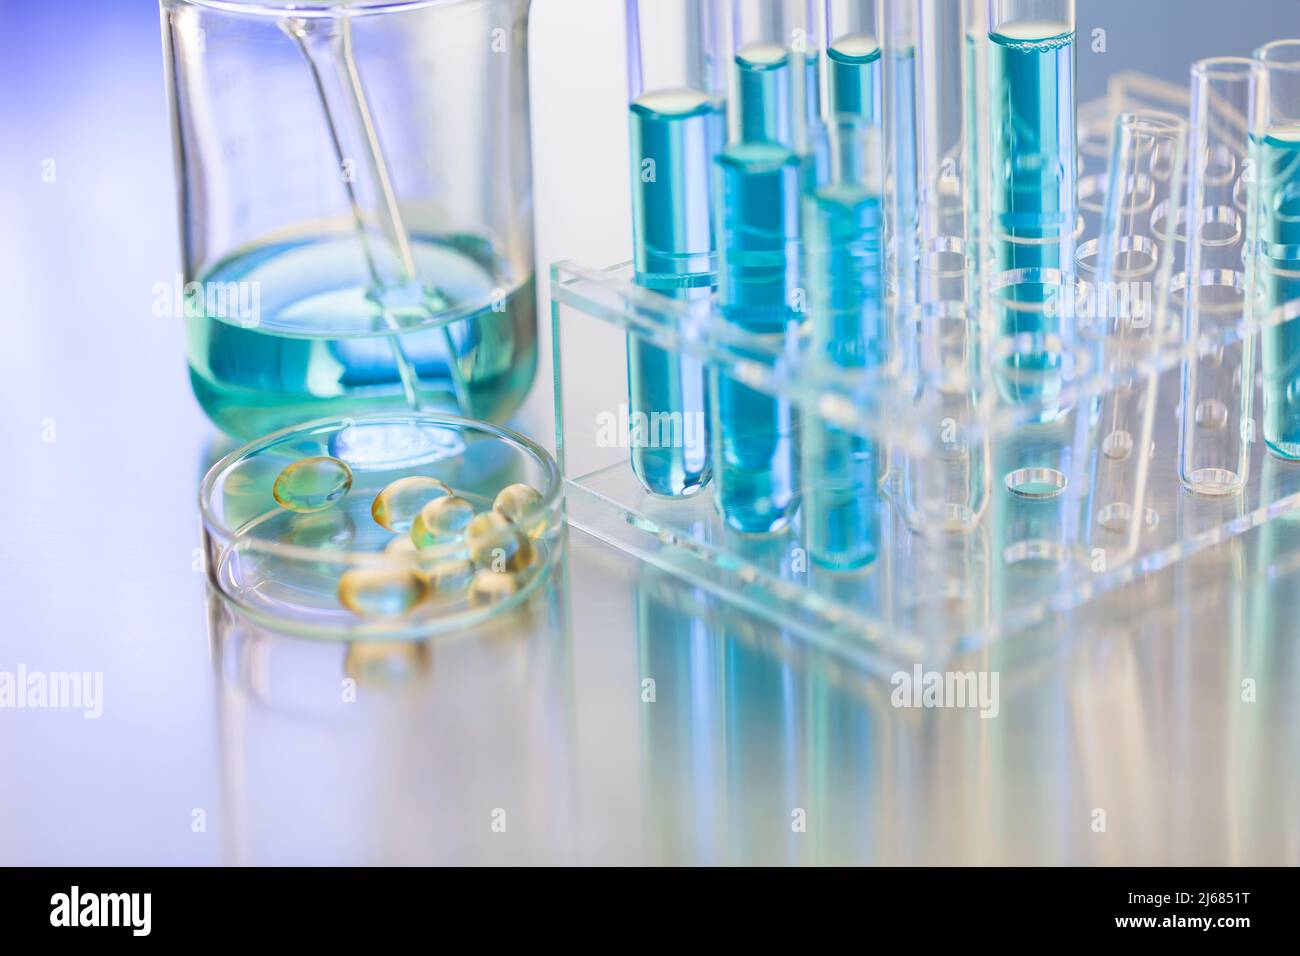 Glasschale mit weichen Kapseln in einem CHEMIELABOR mit Becher und Reagenzglasgestell - Stock Foto Stockfoto